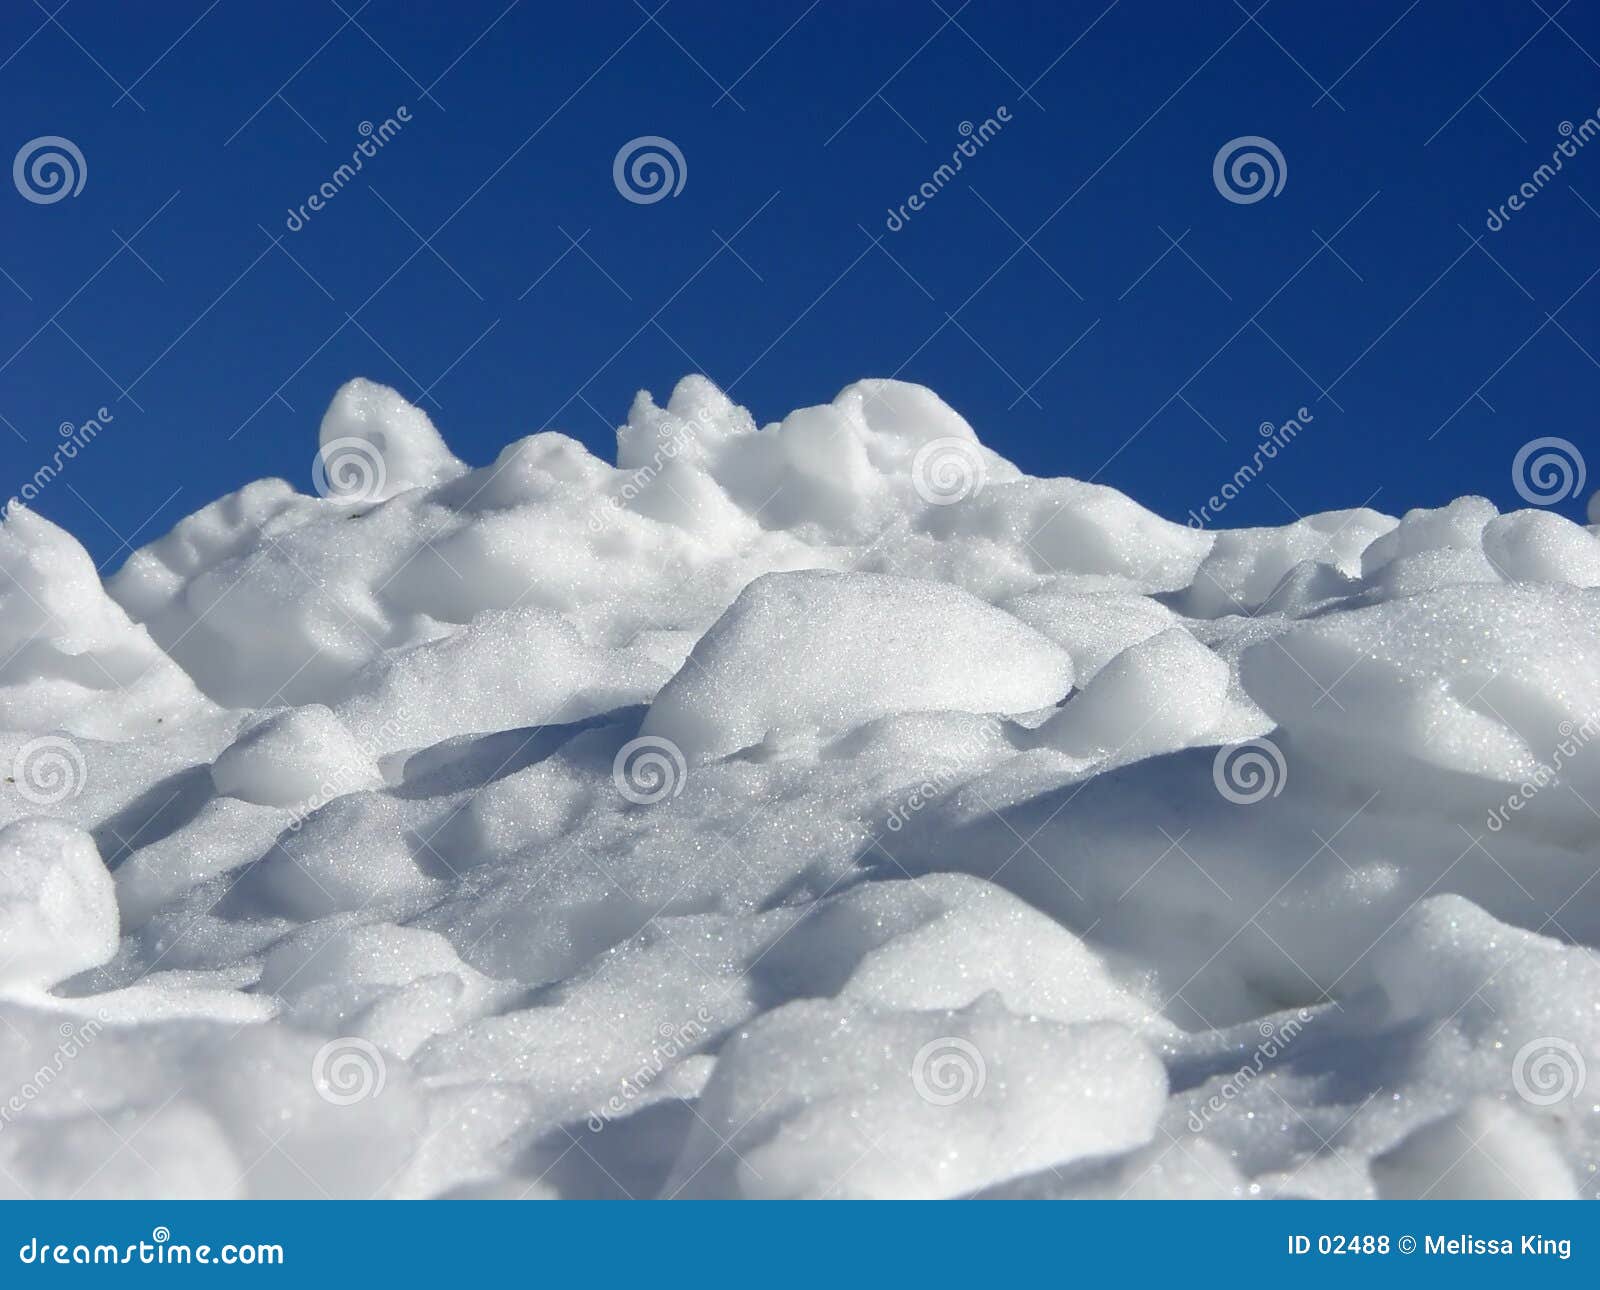 snow pile clipart - photo #6